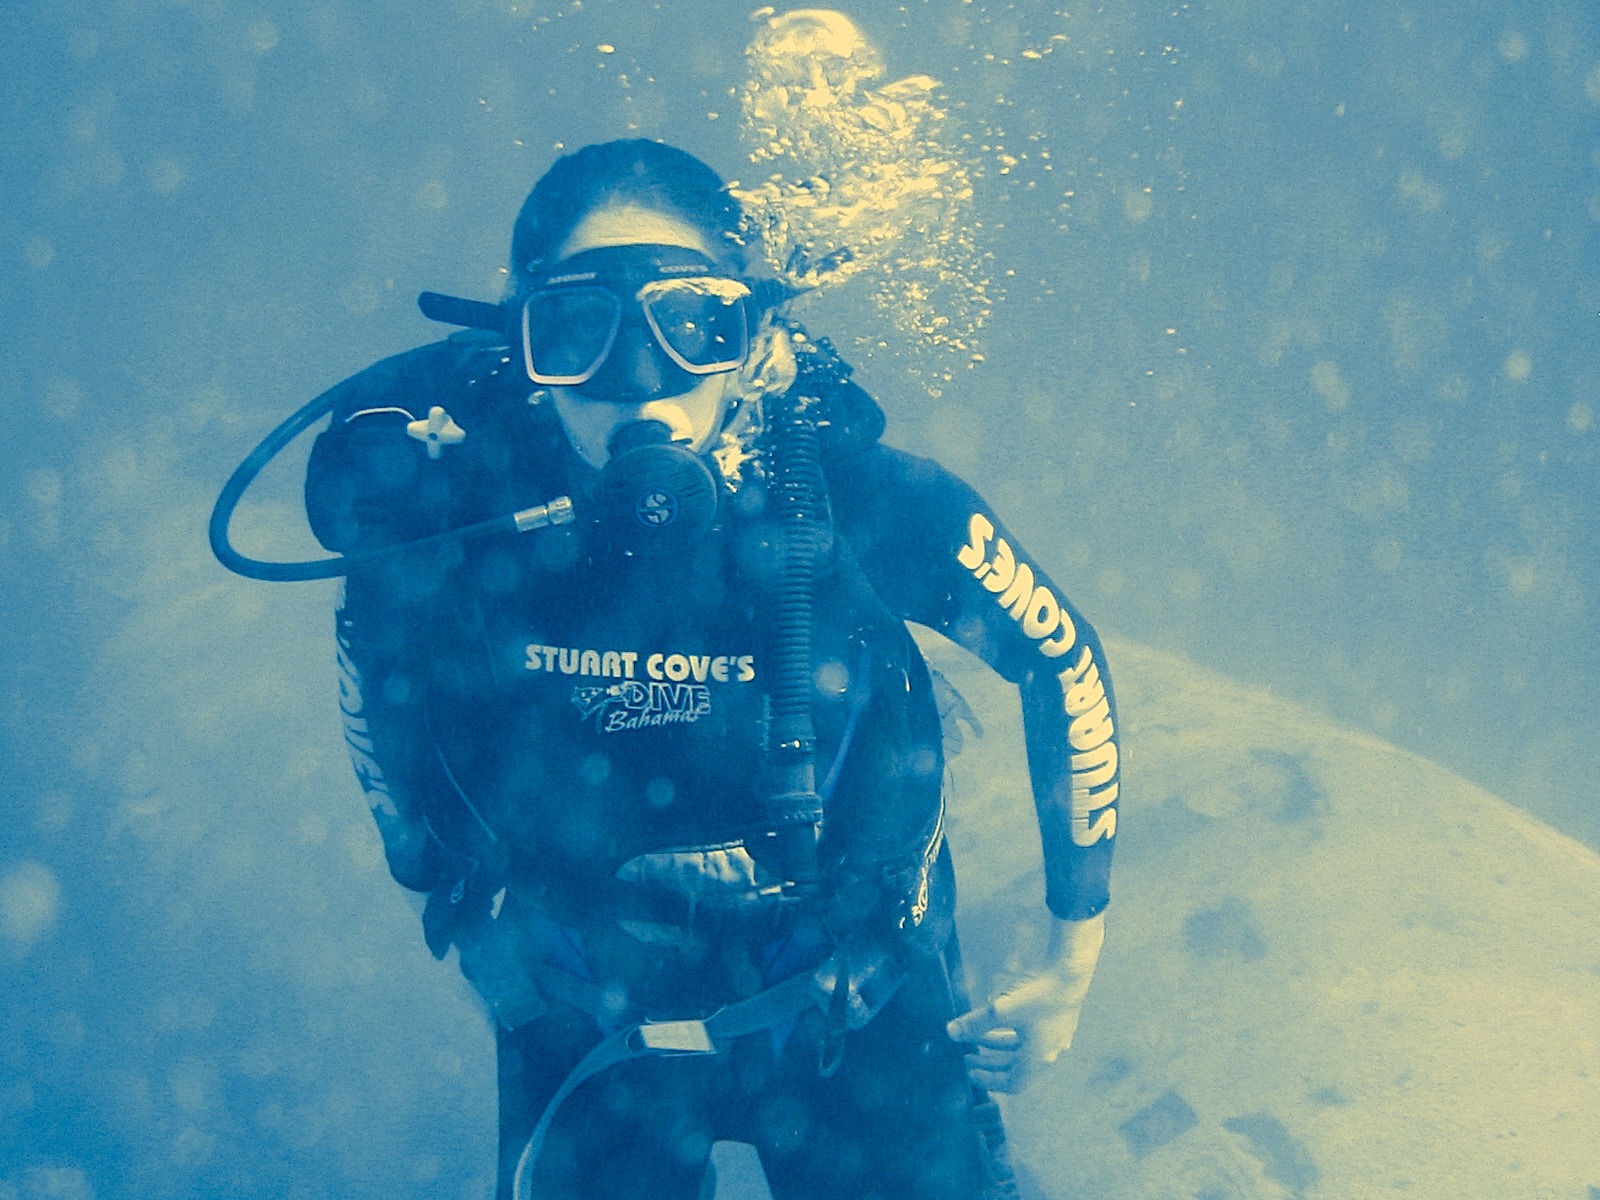 Stega breathing underwater